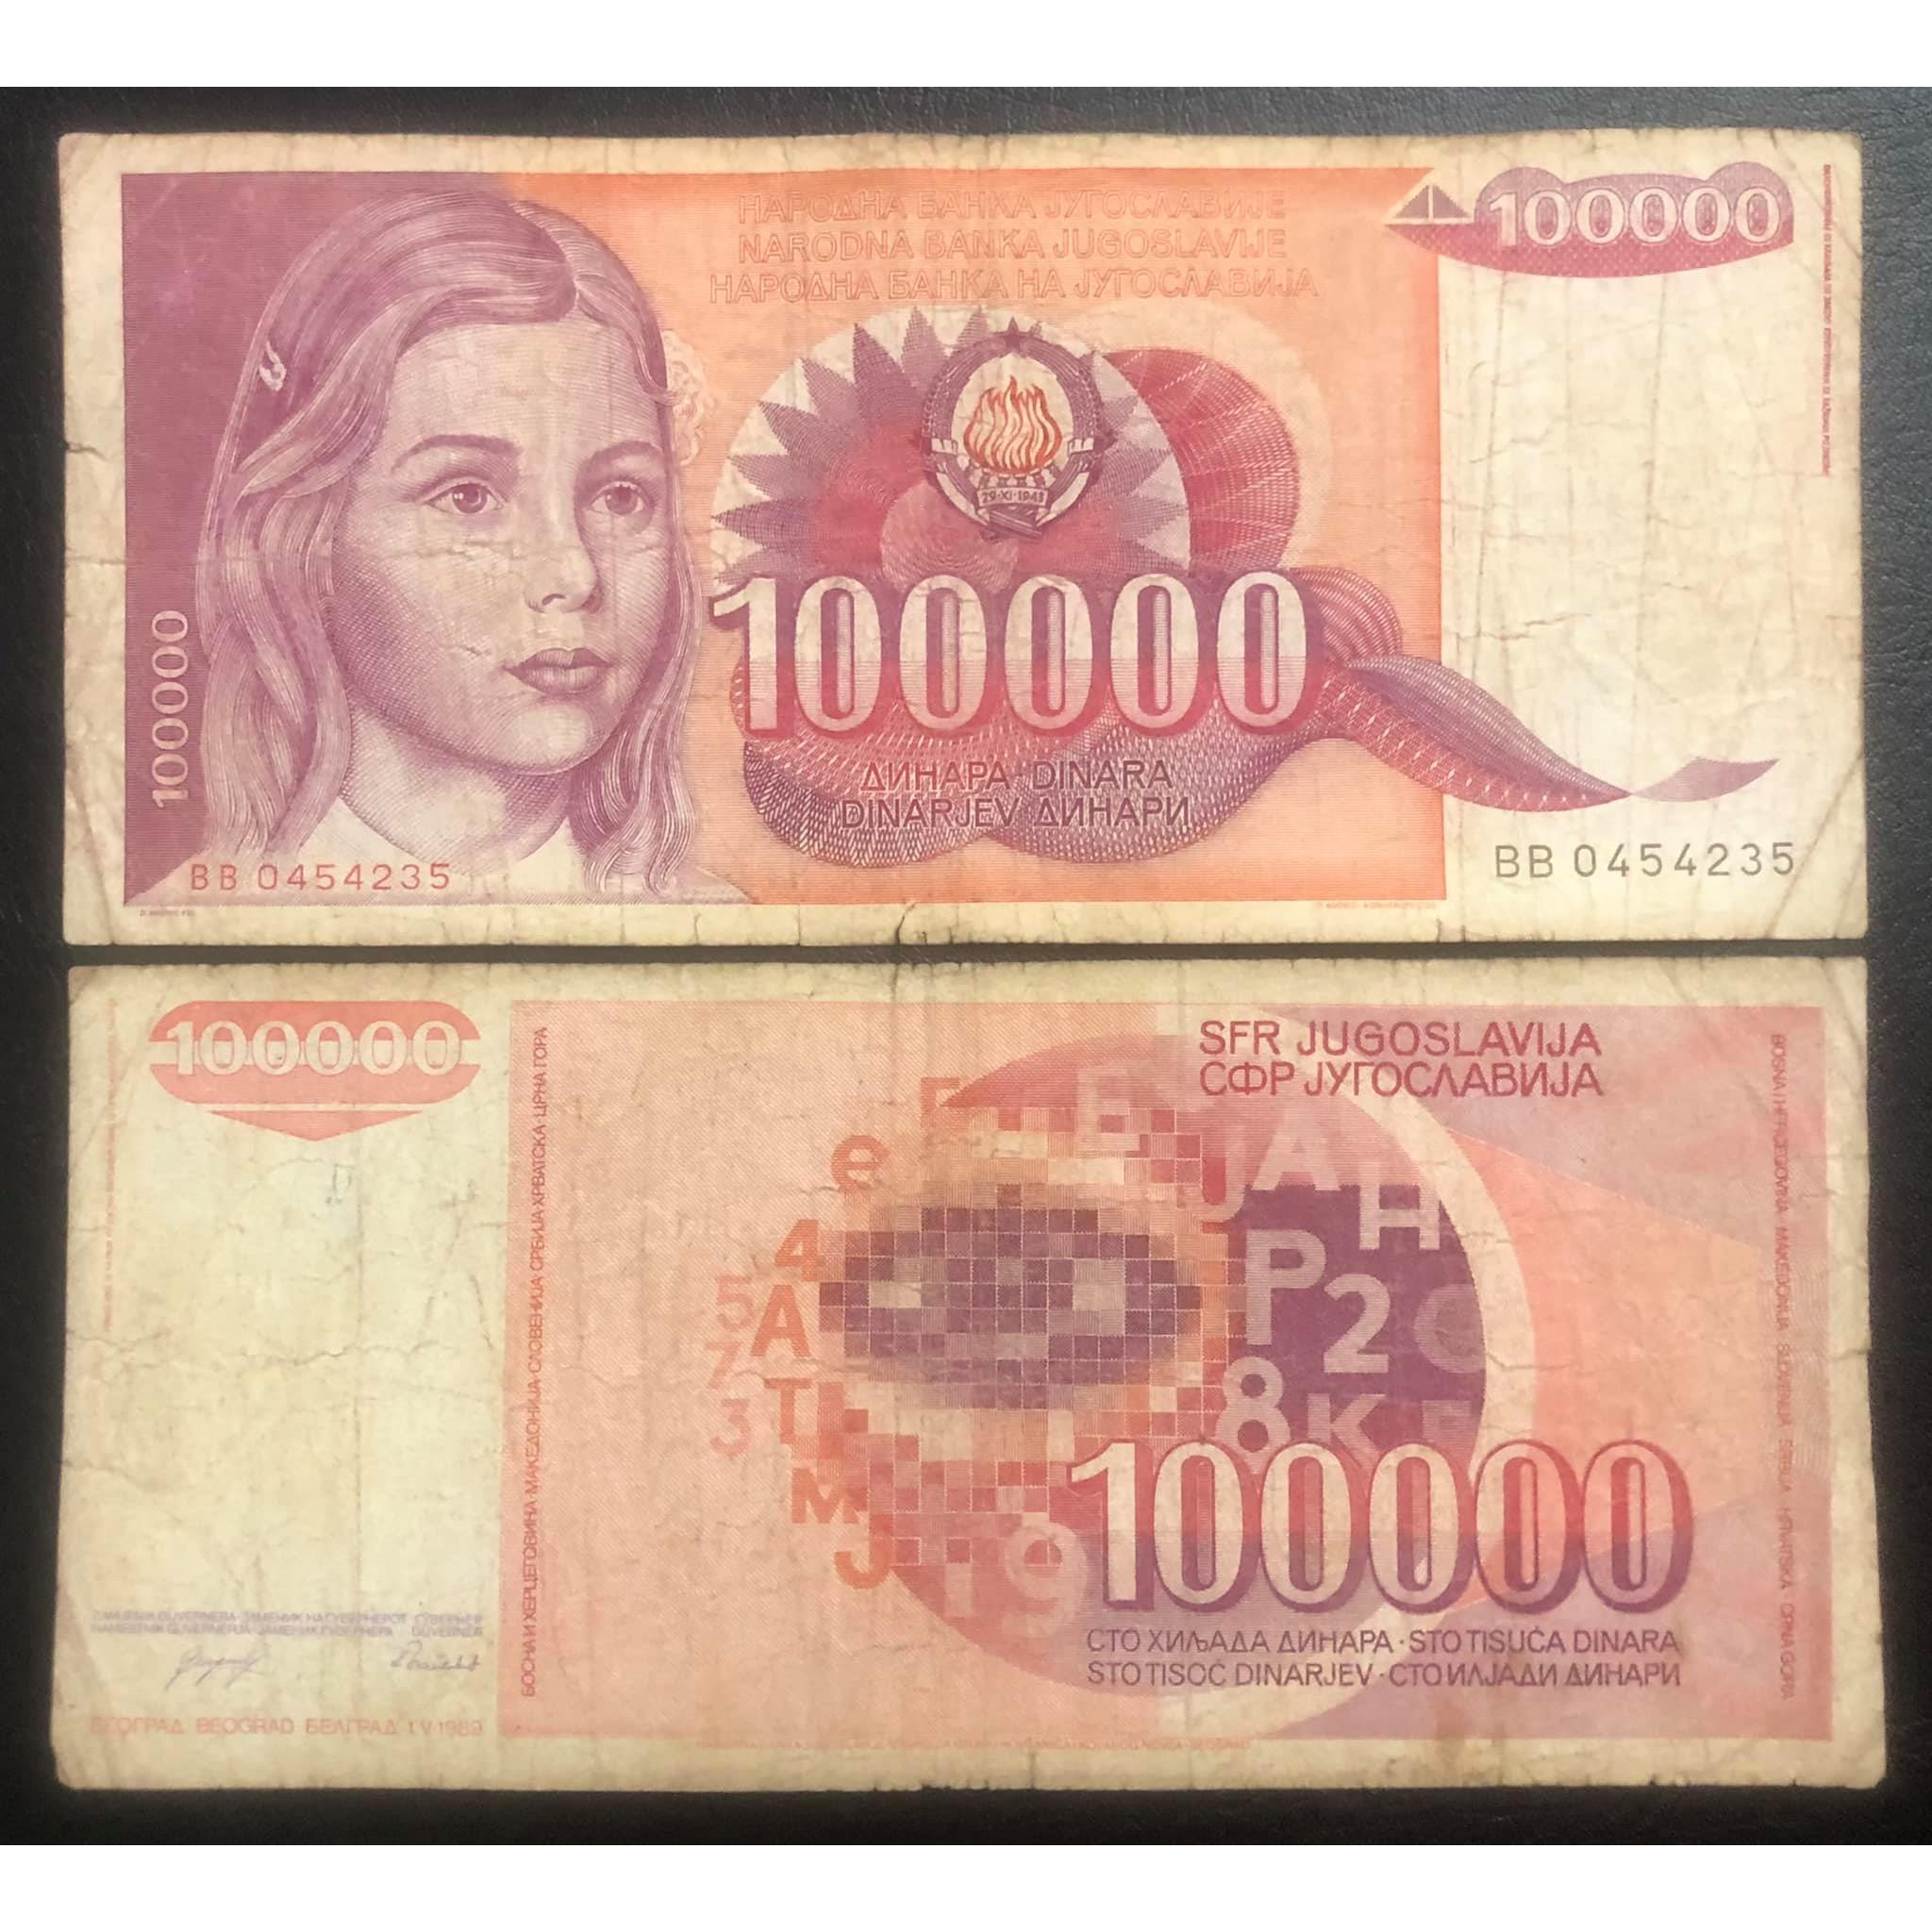 Tiền xưa Nam Tư 100.000 dinara, quốc gia không còn tồn tại